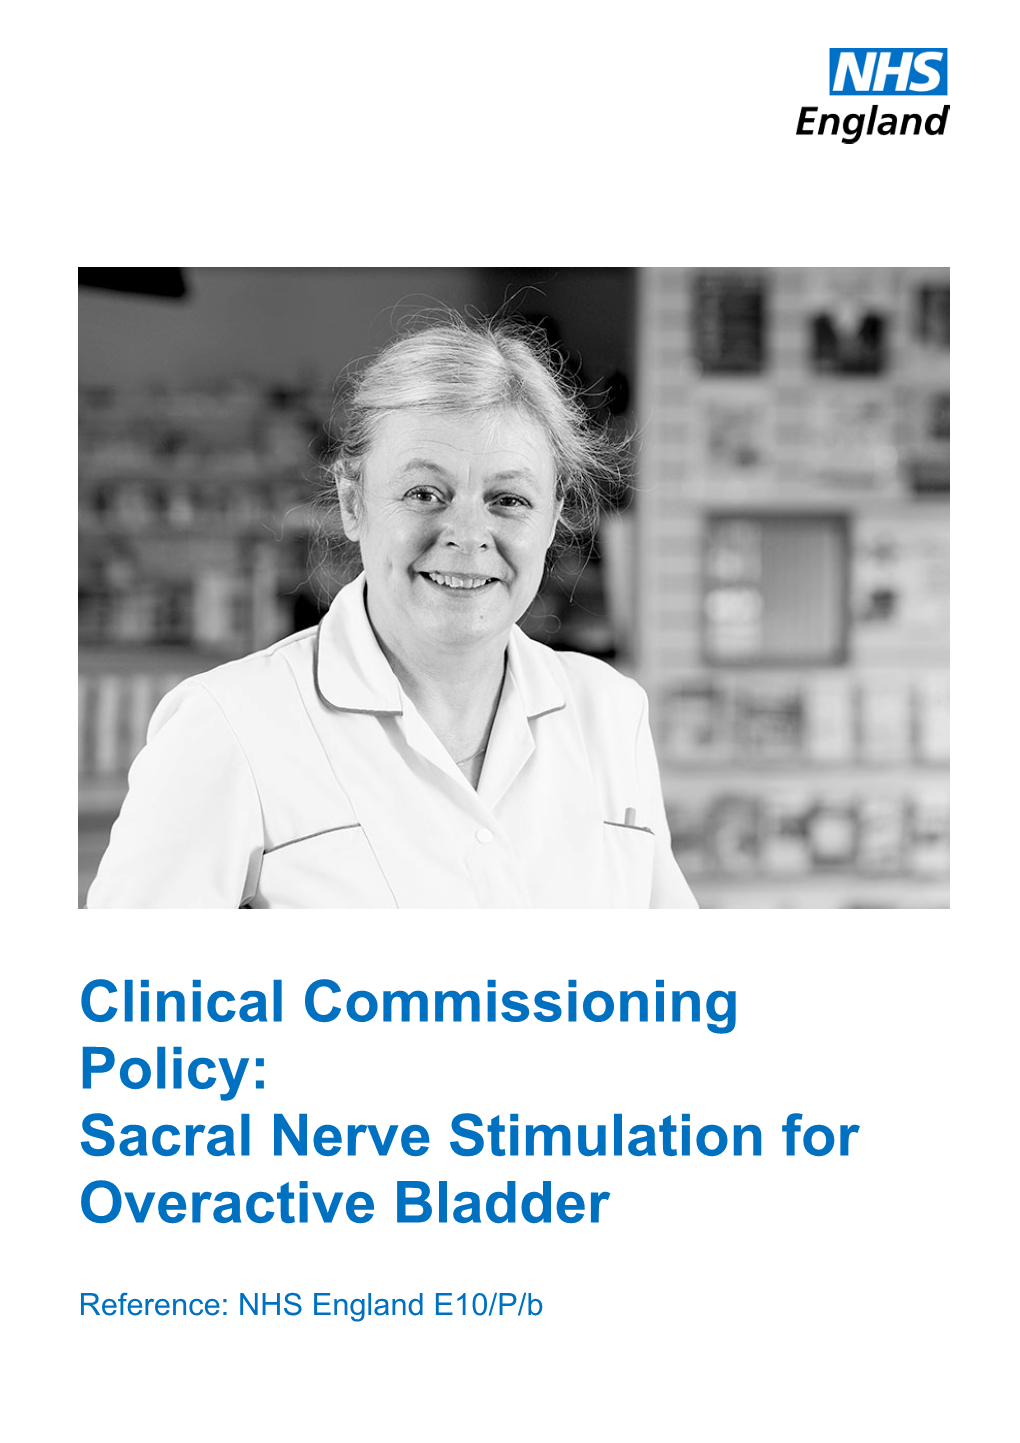 Sacral Nerve Stimulation for Overactive Bladder